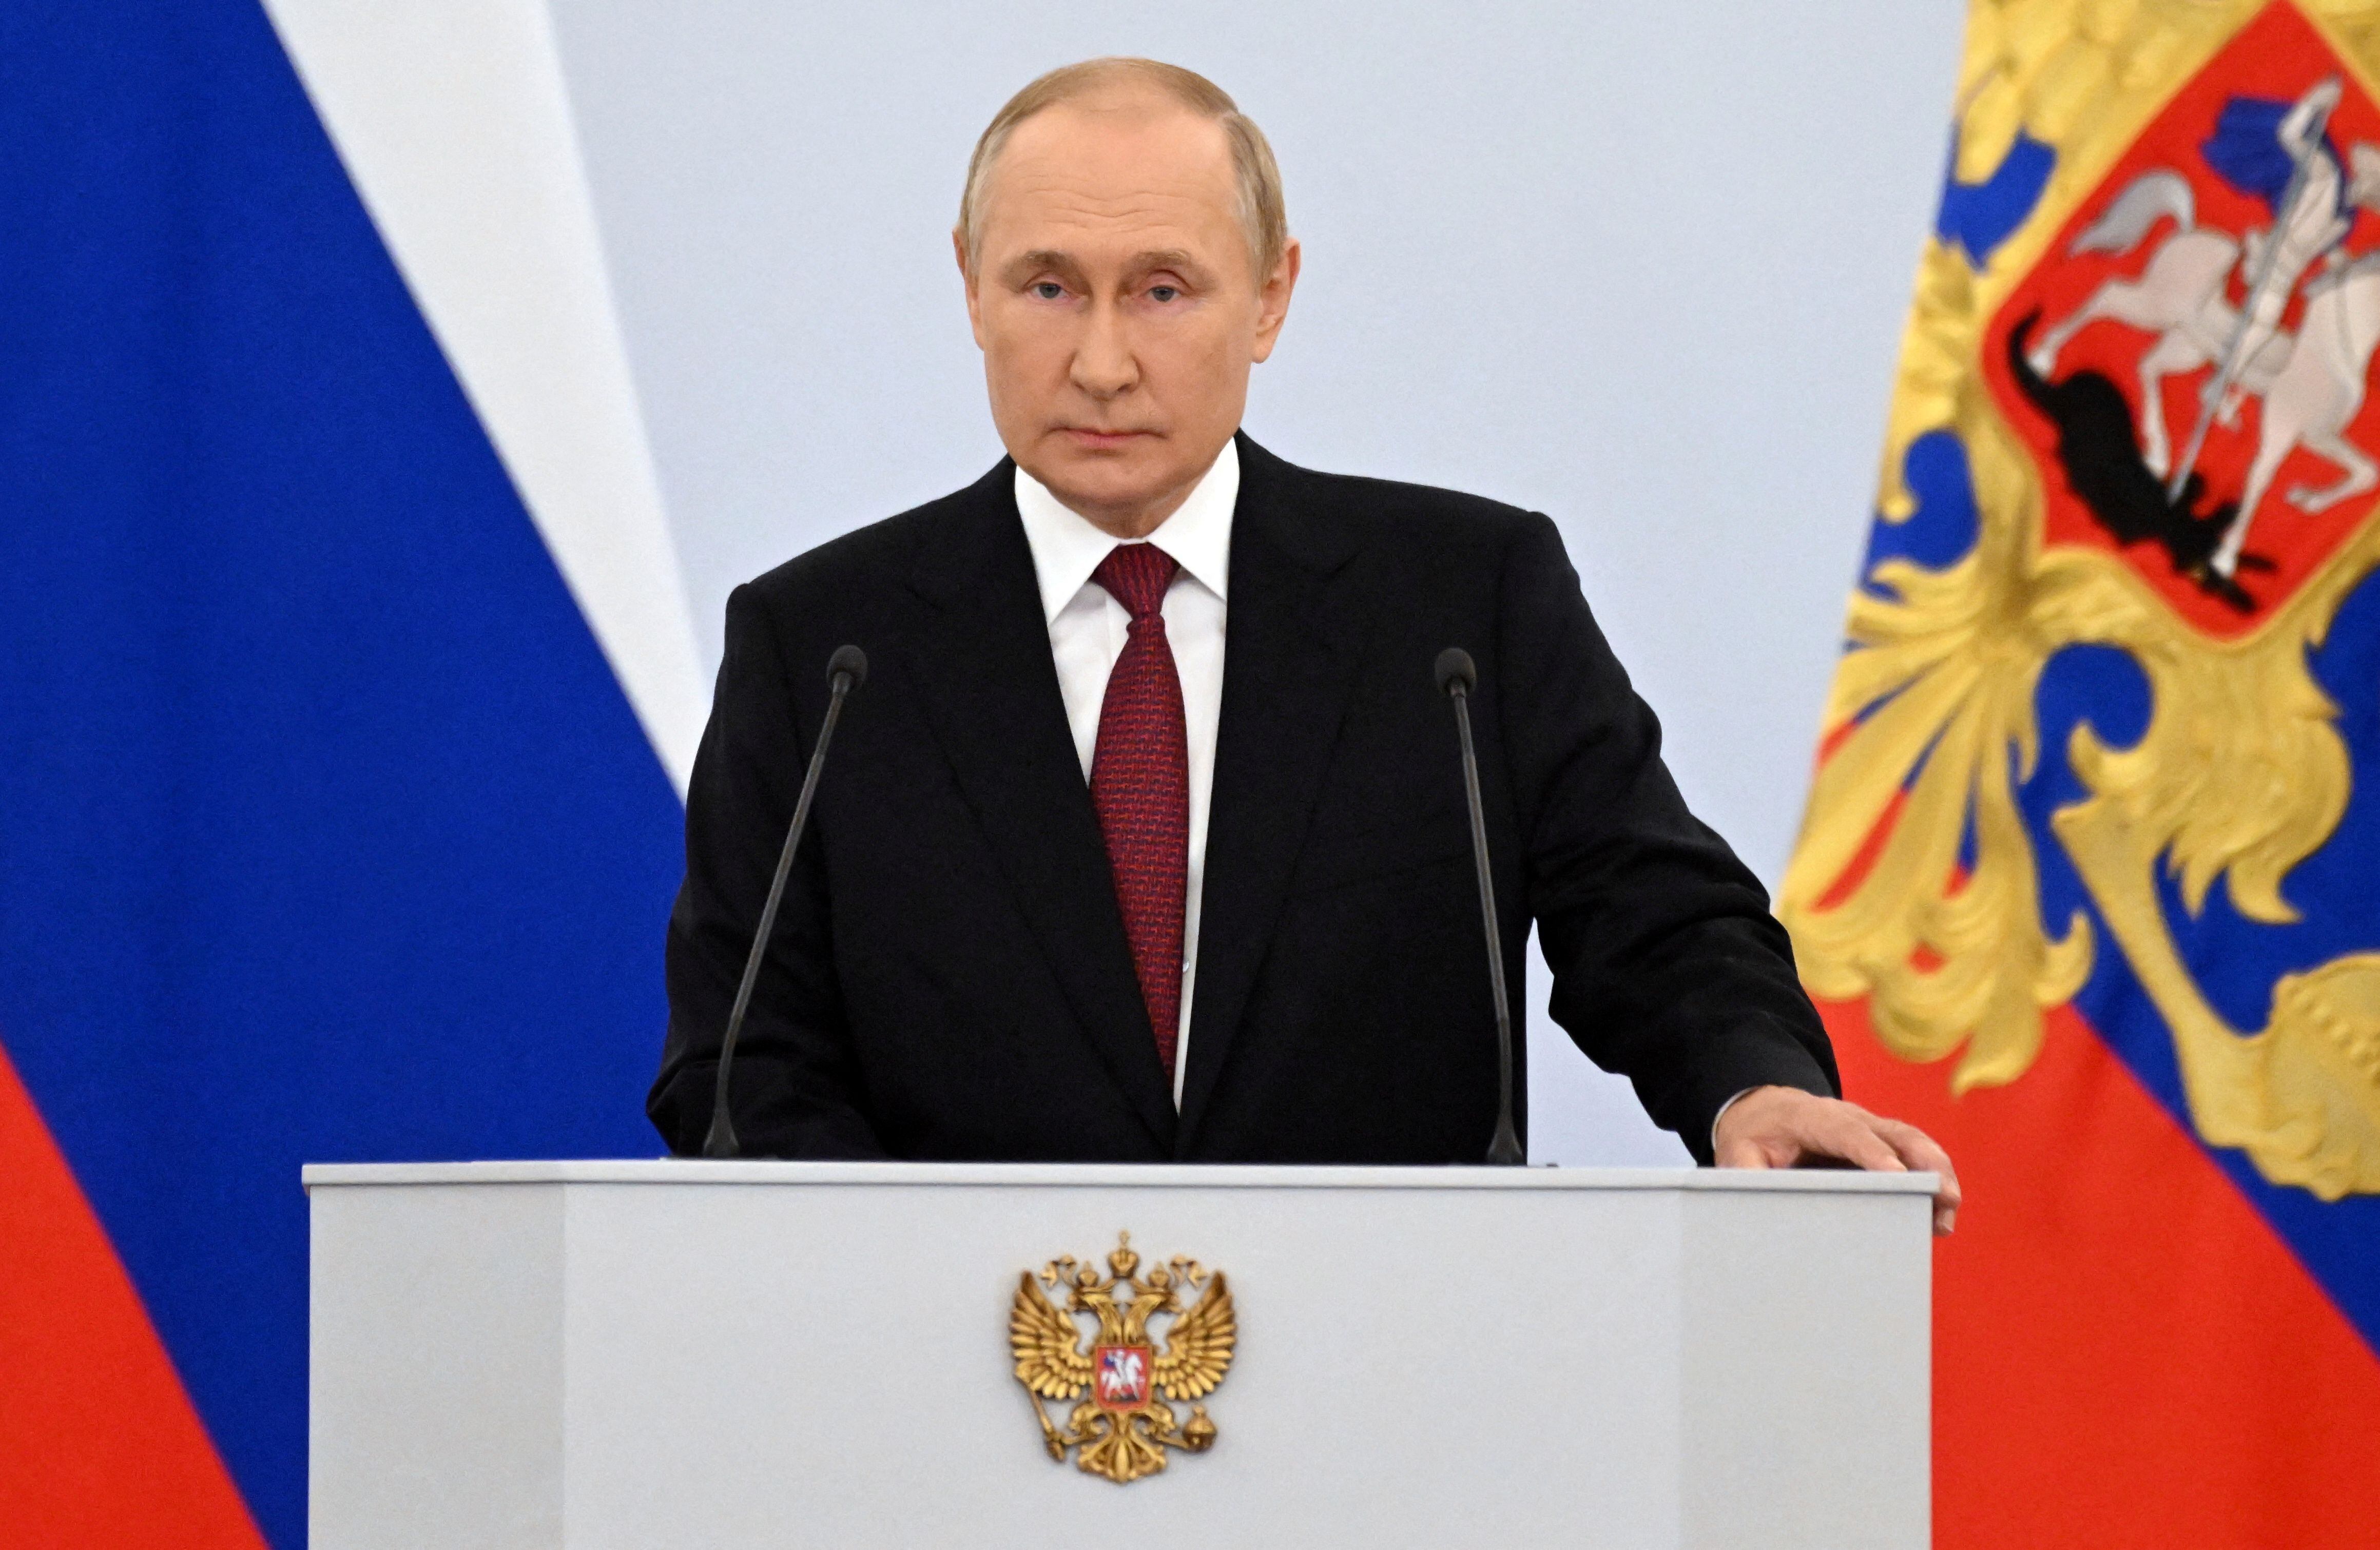 Vladimir Putin (via Reuters)